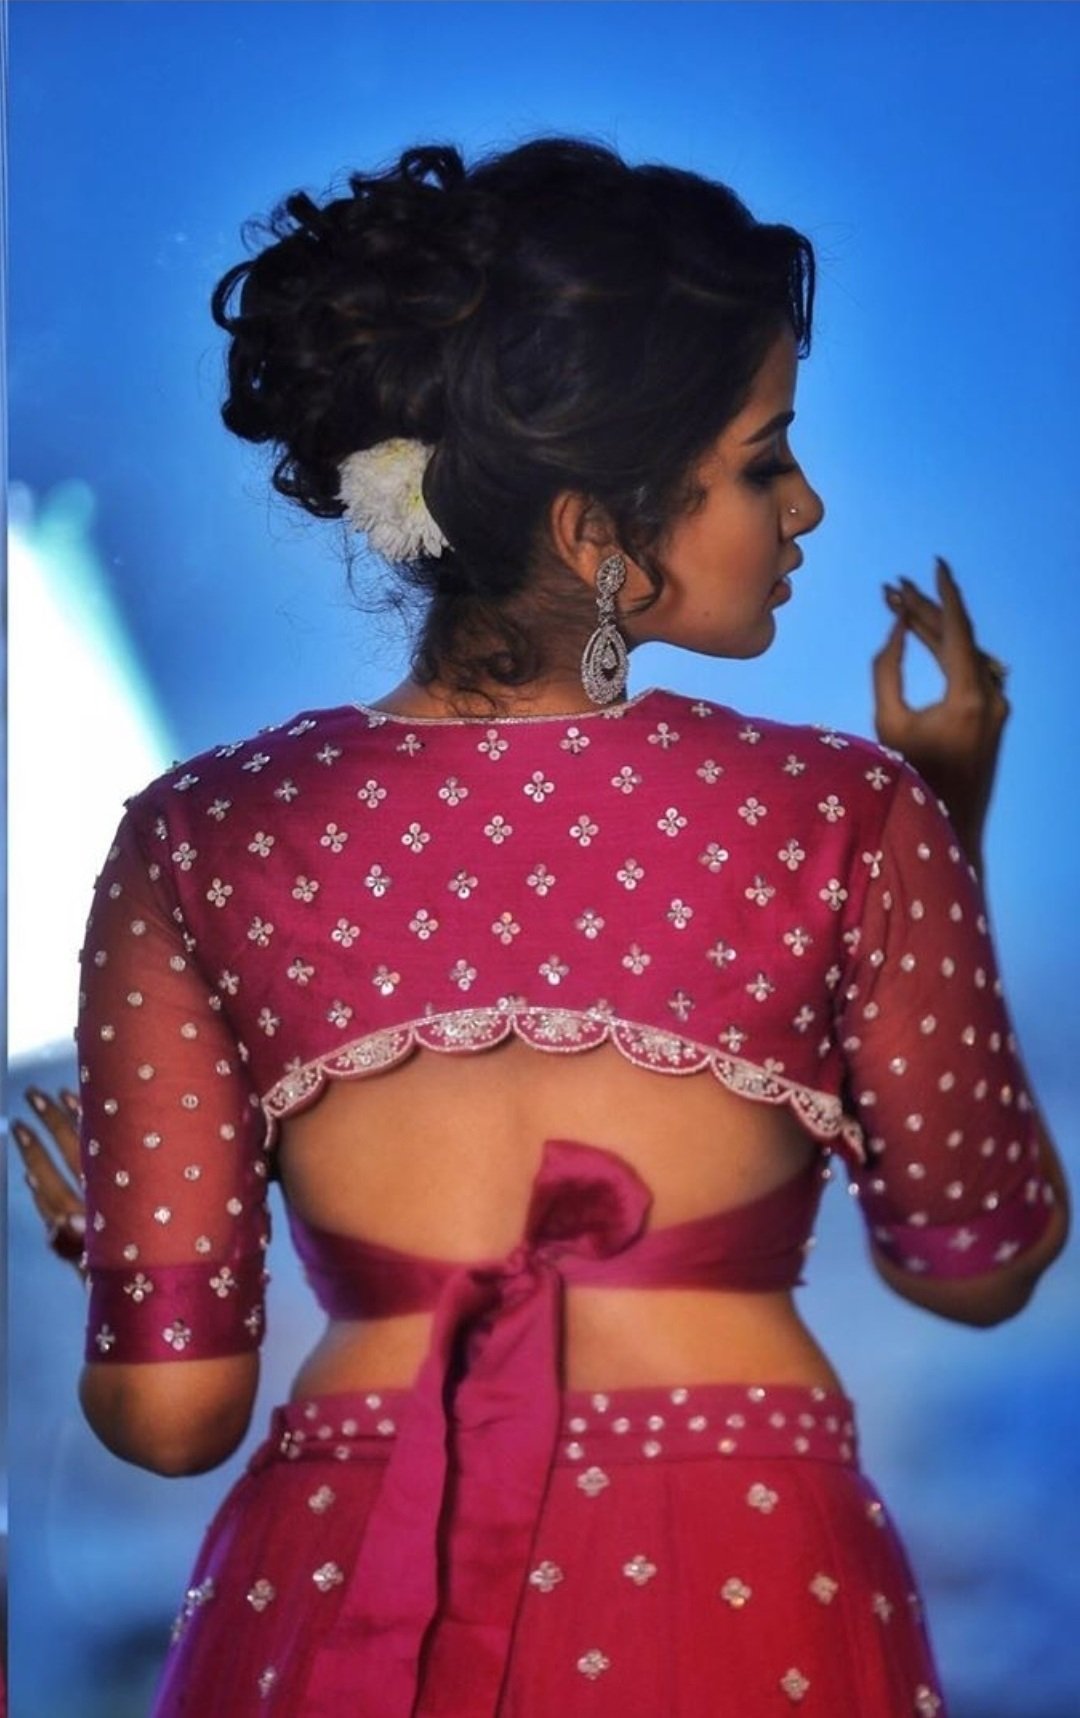 Anupama Parameswaran Fuck Video2018 - Anupama Parameswaran Latest Hot Photos Exposing Her Sexy Back